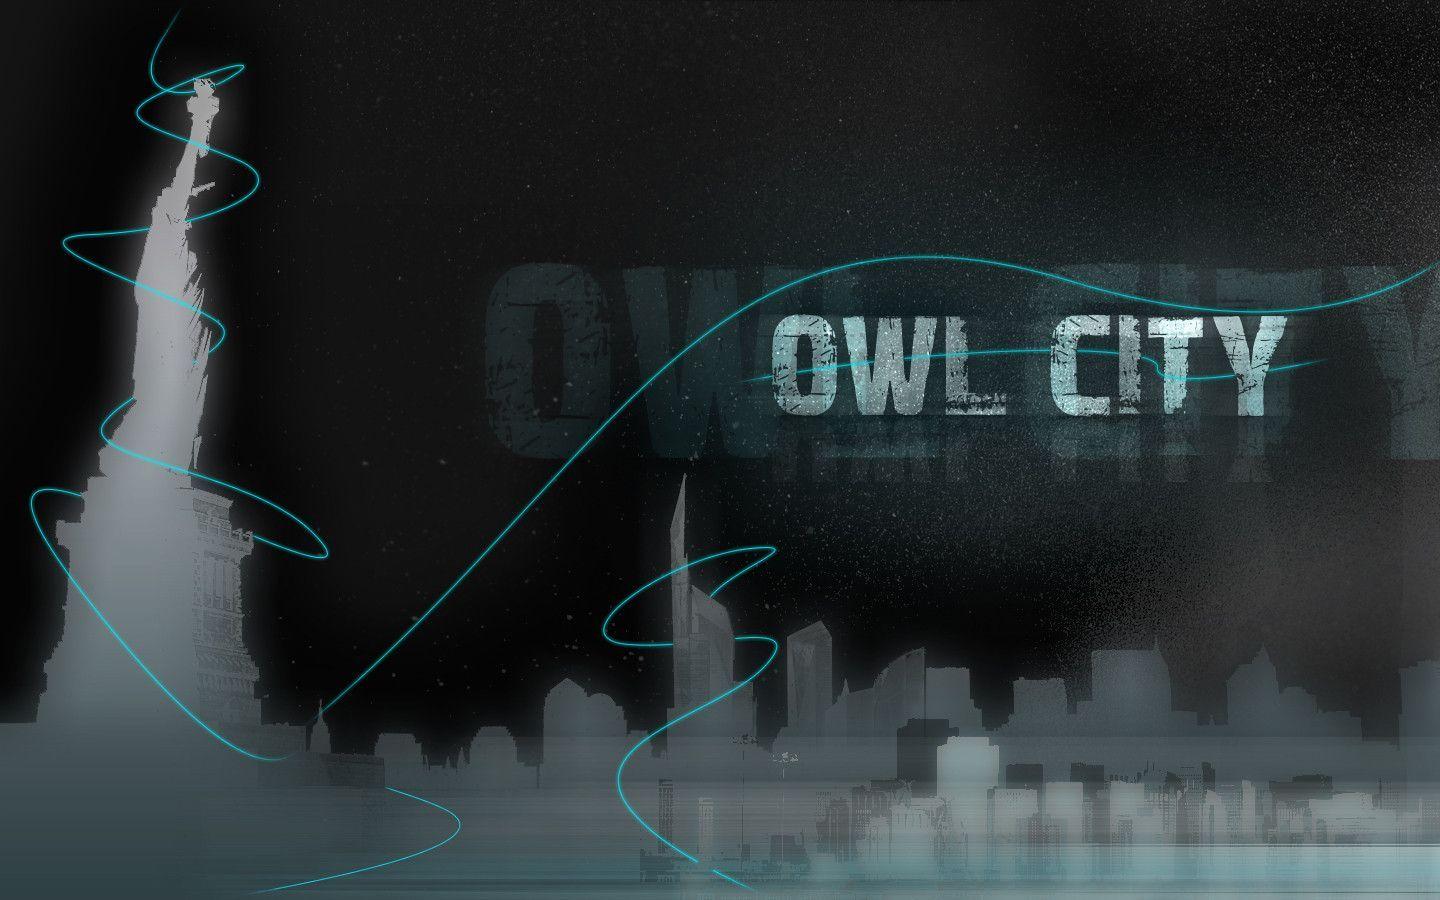 Pin Owl City